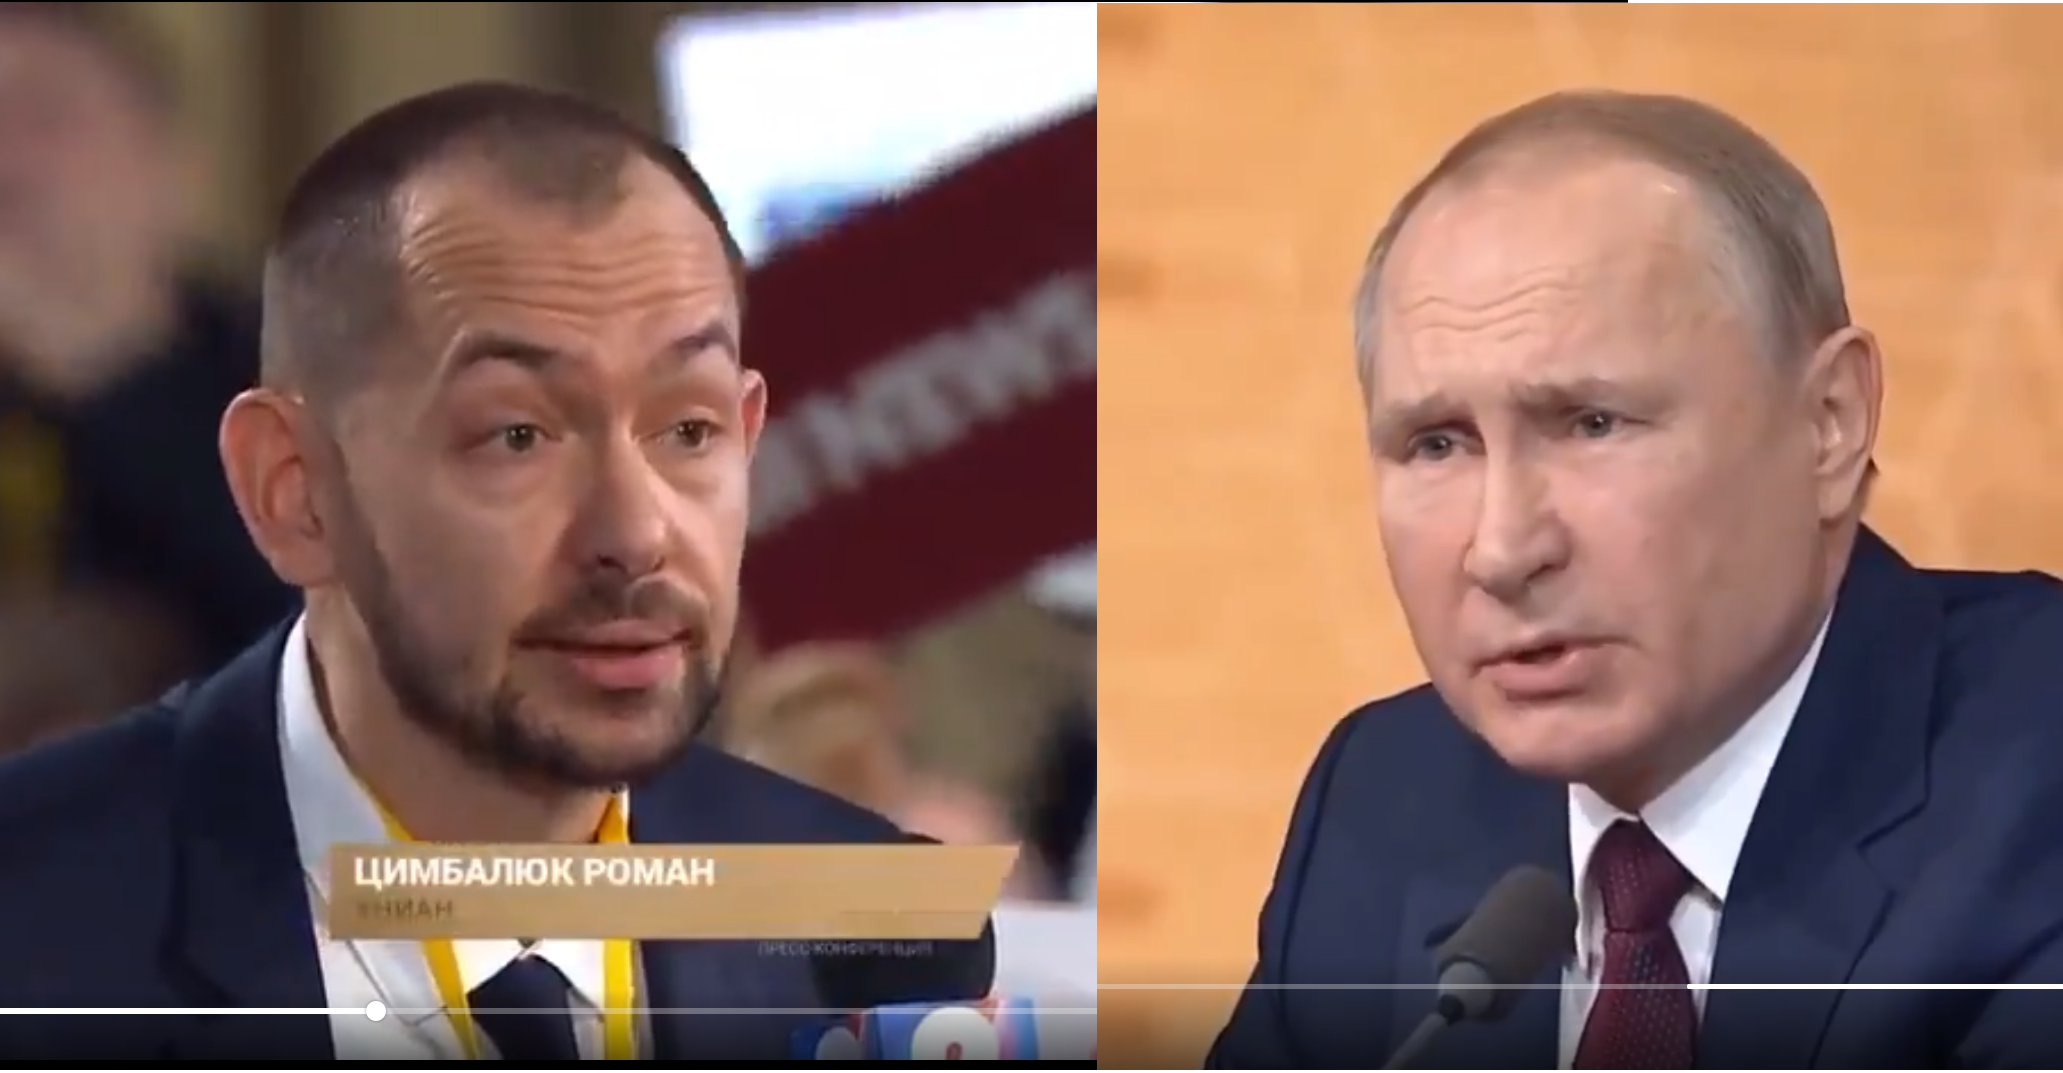 Цимбалюк посмеялся над Путиным, задав острый вопрос прямо в лицо: видео разозлило РФ